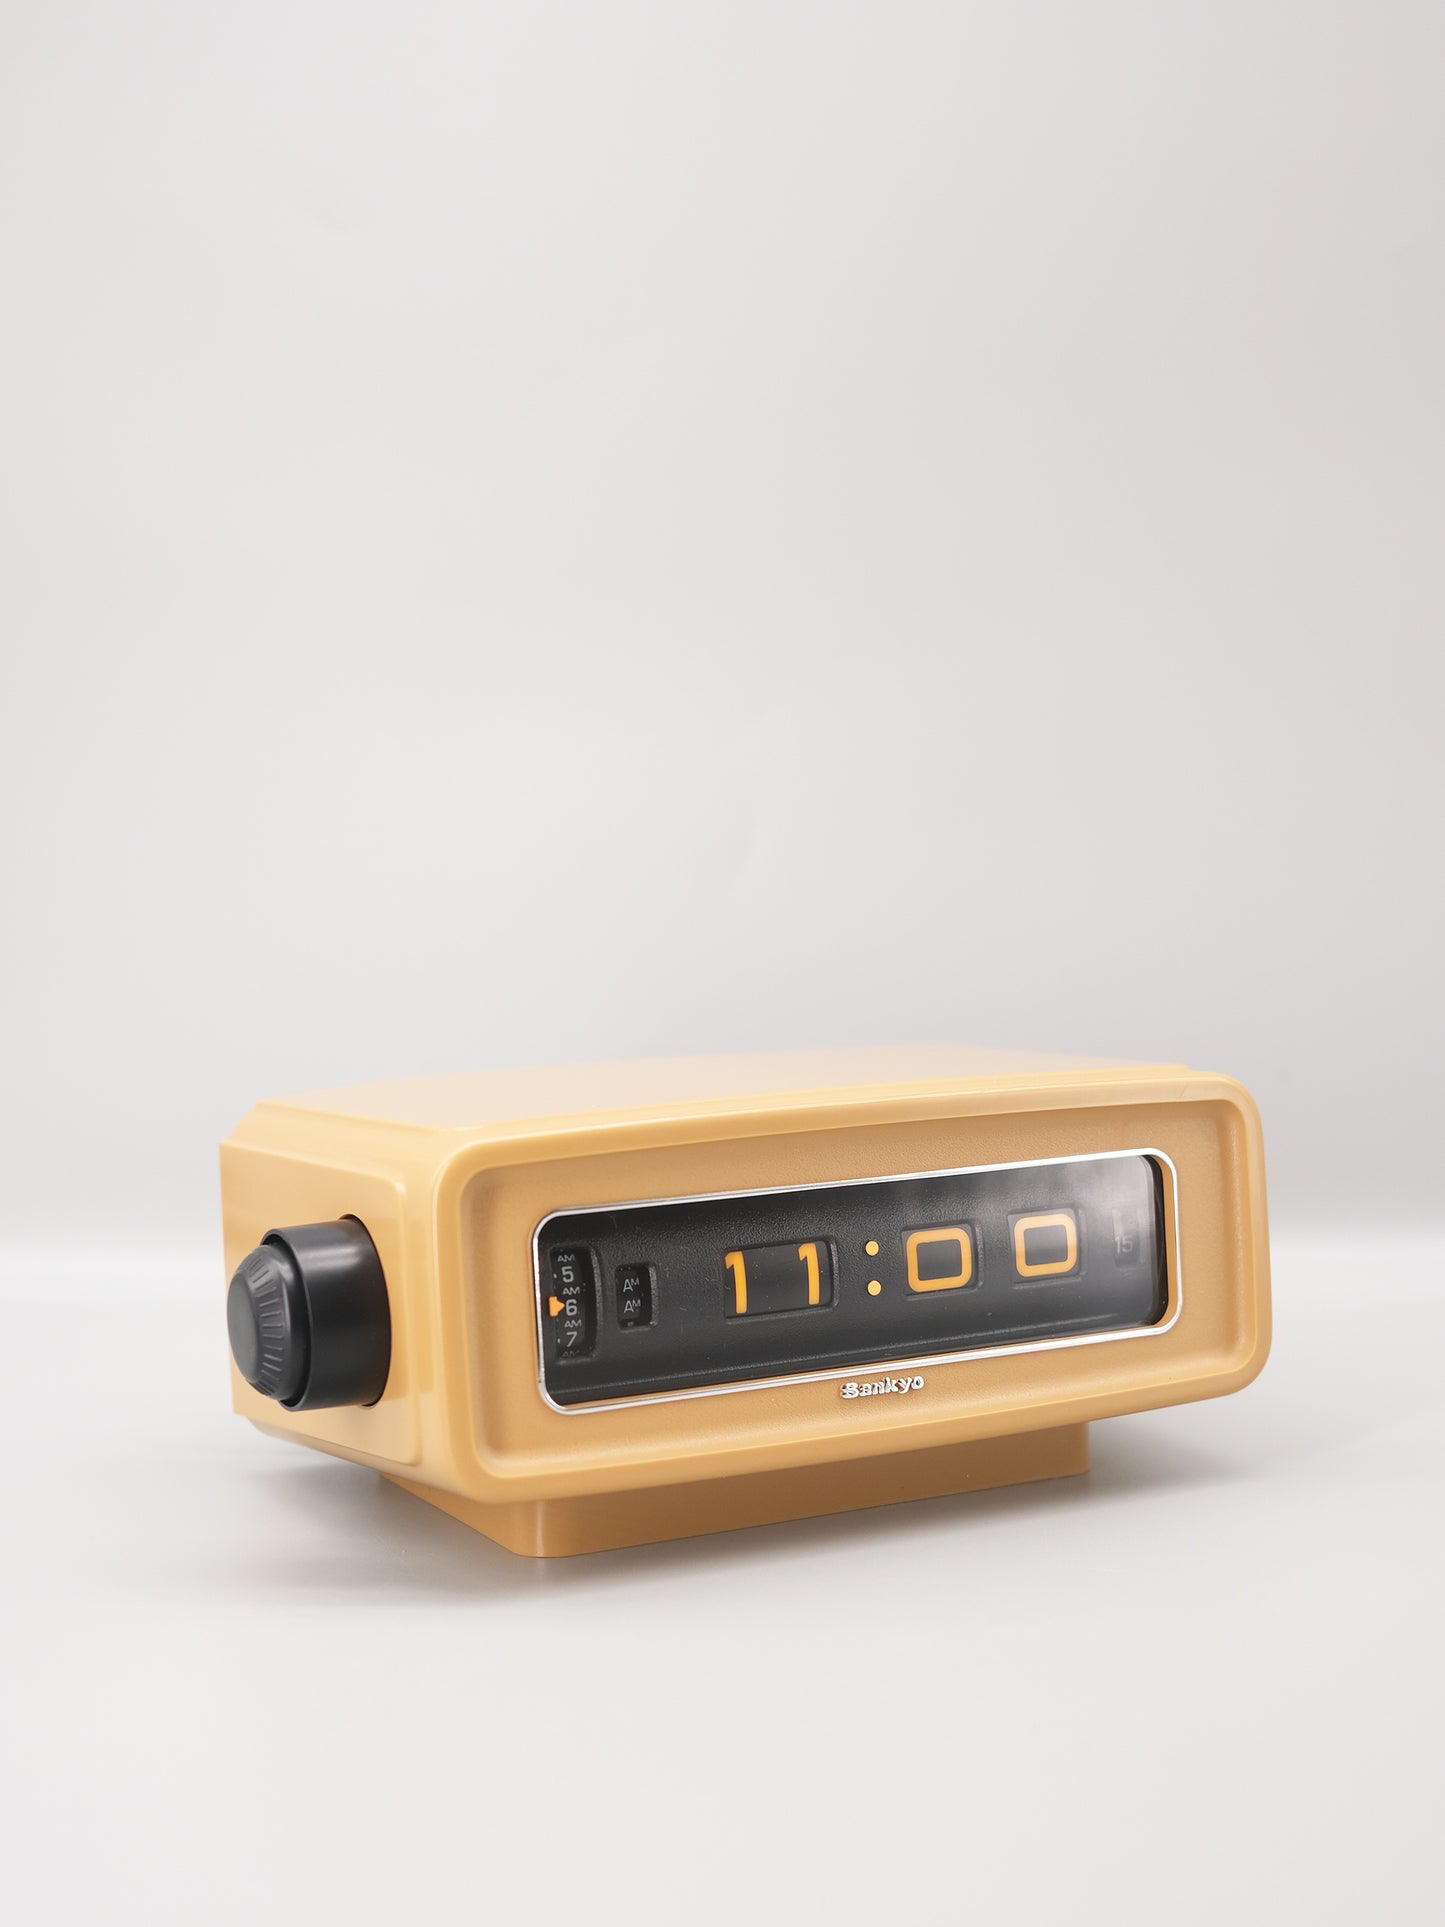 全新品 日本制 70s Sankyo DT-303 Digital Alarm Flip Clock 米色 翻頁鐘 有盒